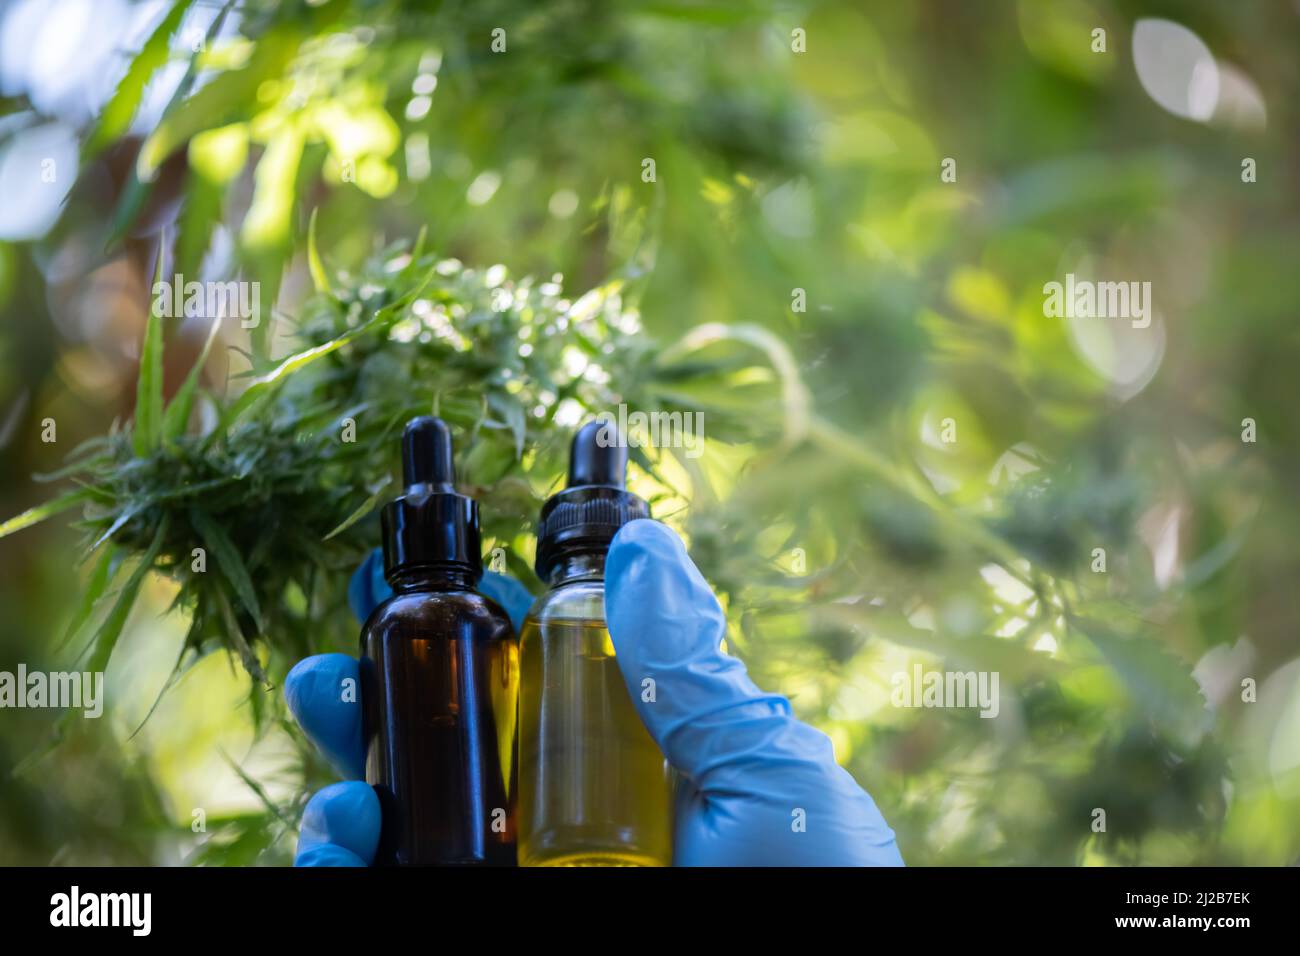 Cannabis huile de CBD produits de chanvre huile de cannabis, huile de CBD extrait de cannabis, concept médical de cannabis. Banque D'Images